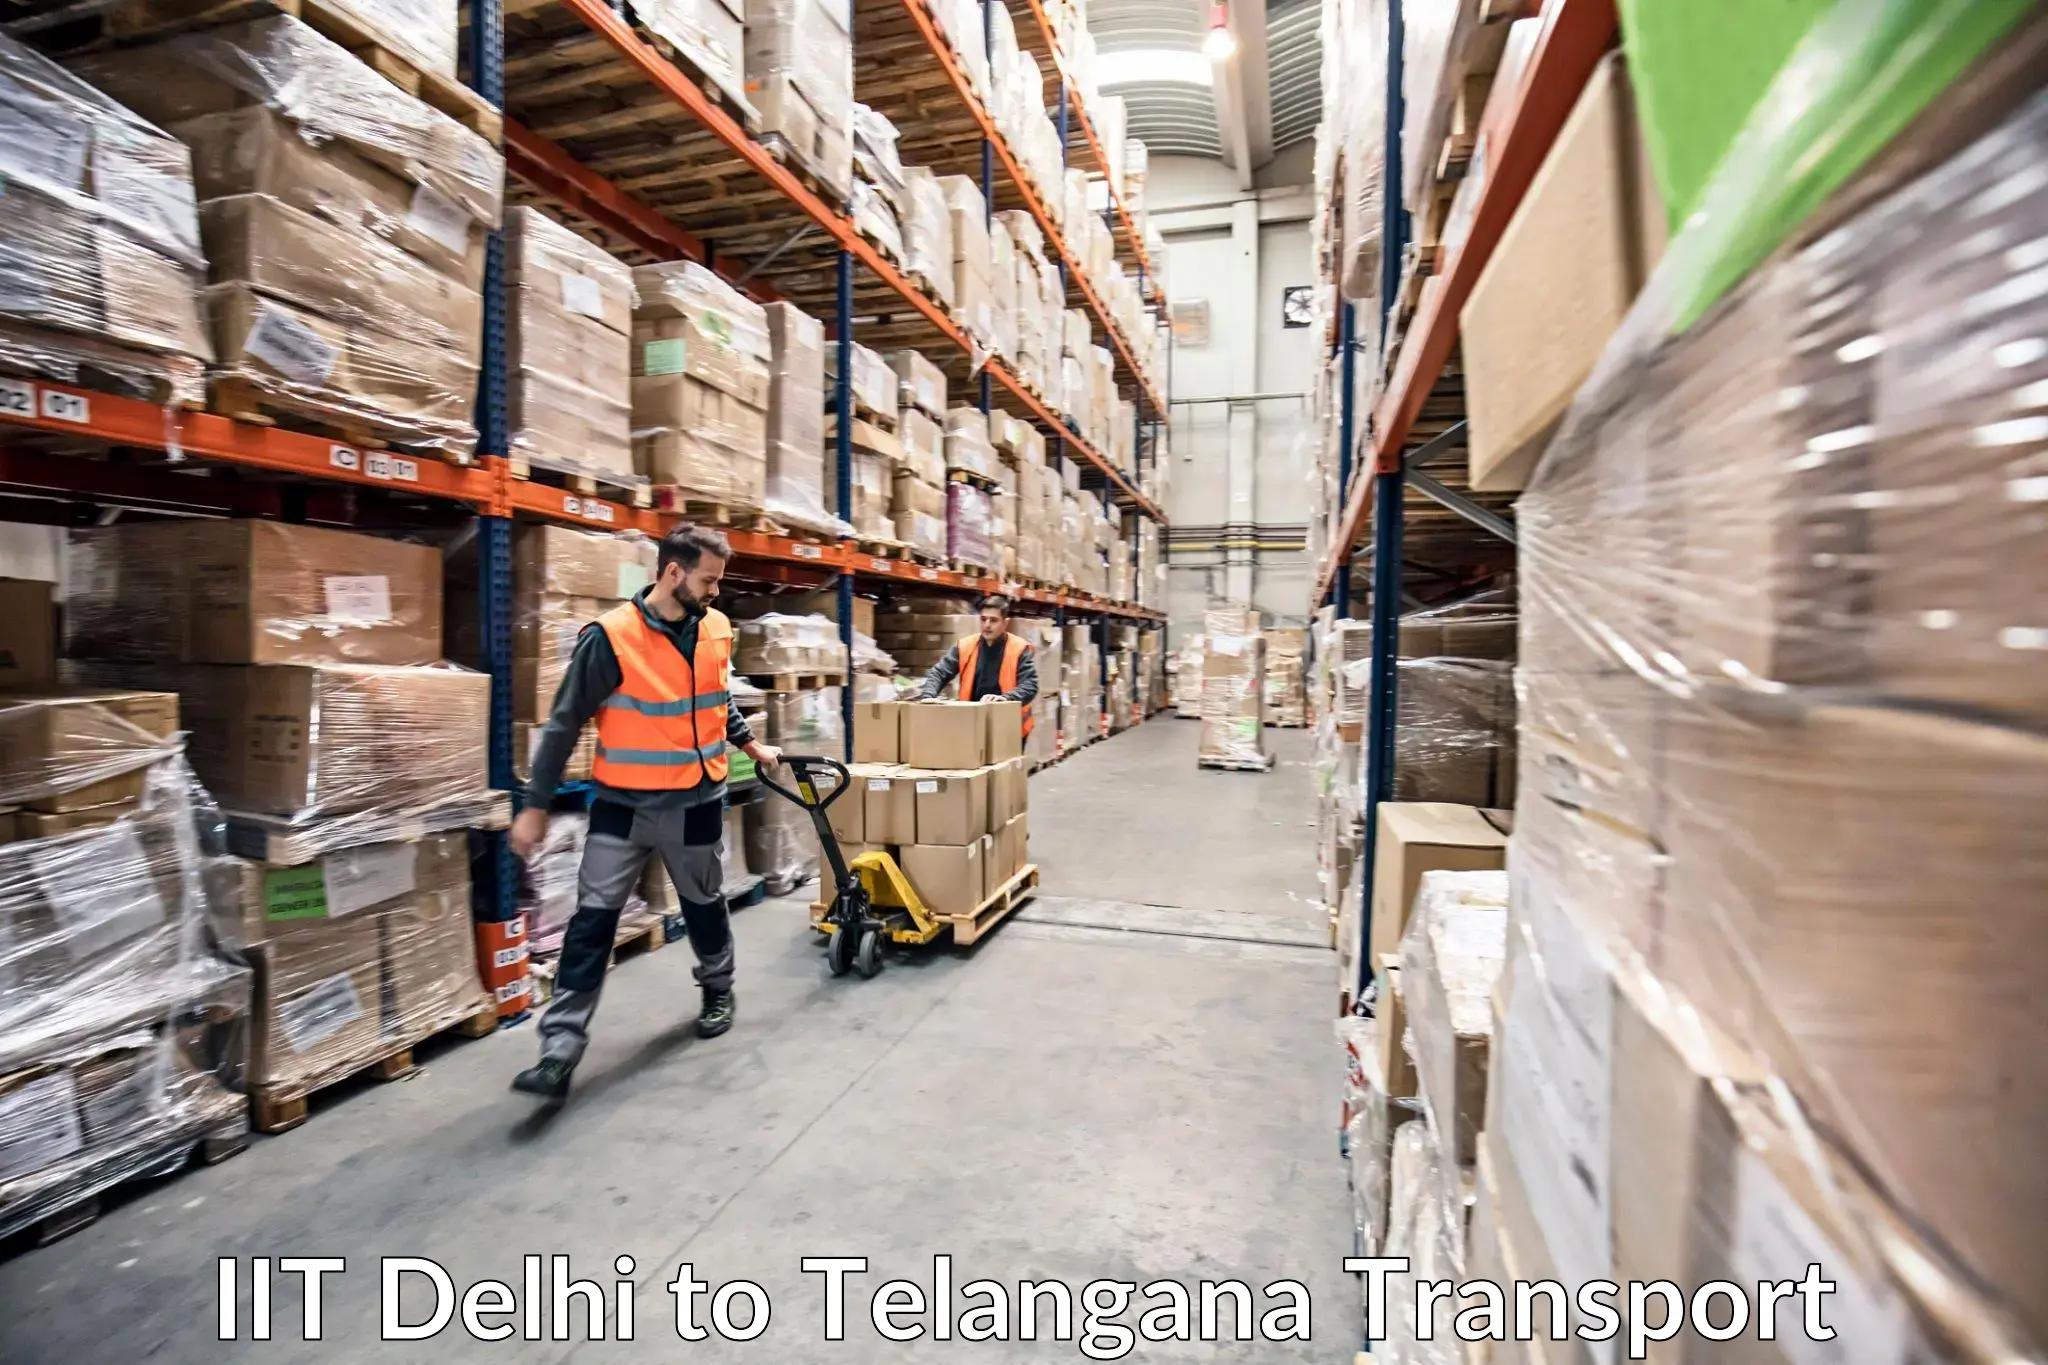 Container transport service IIT Delhi to Patancheru